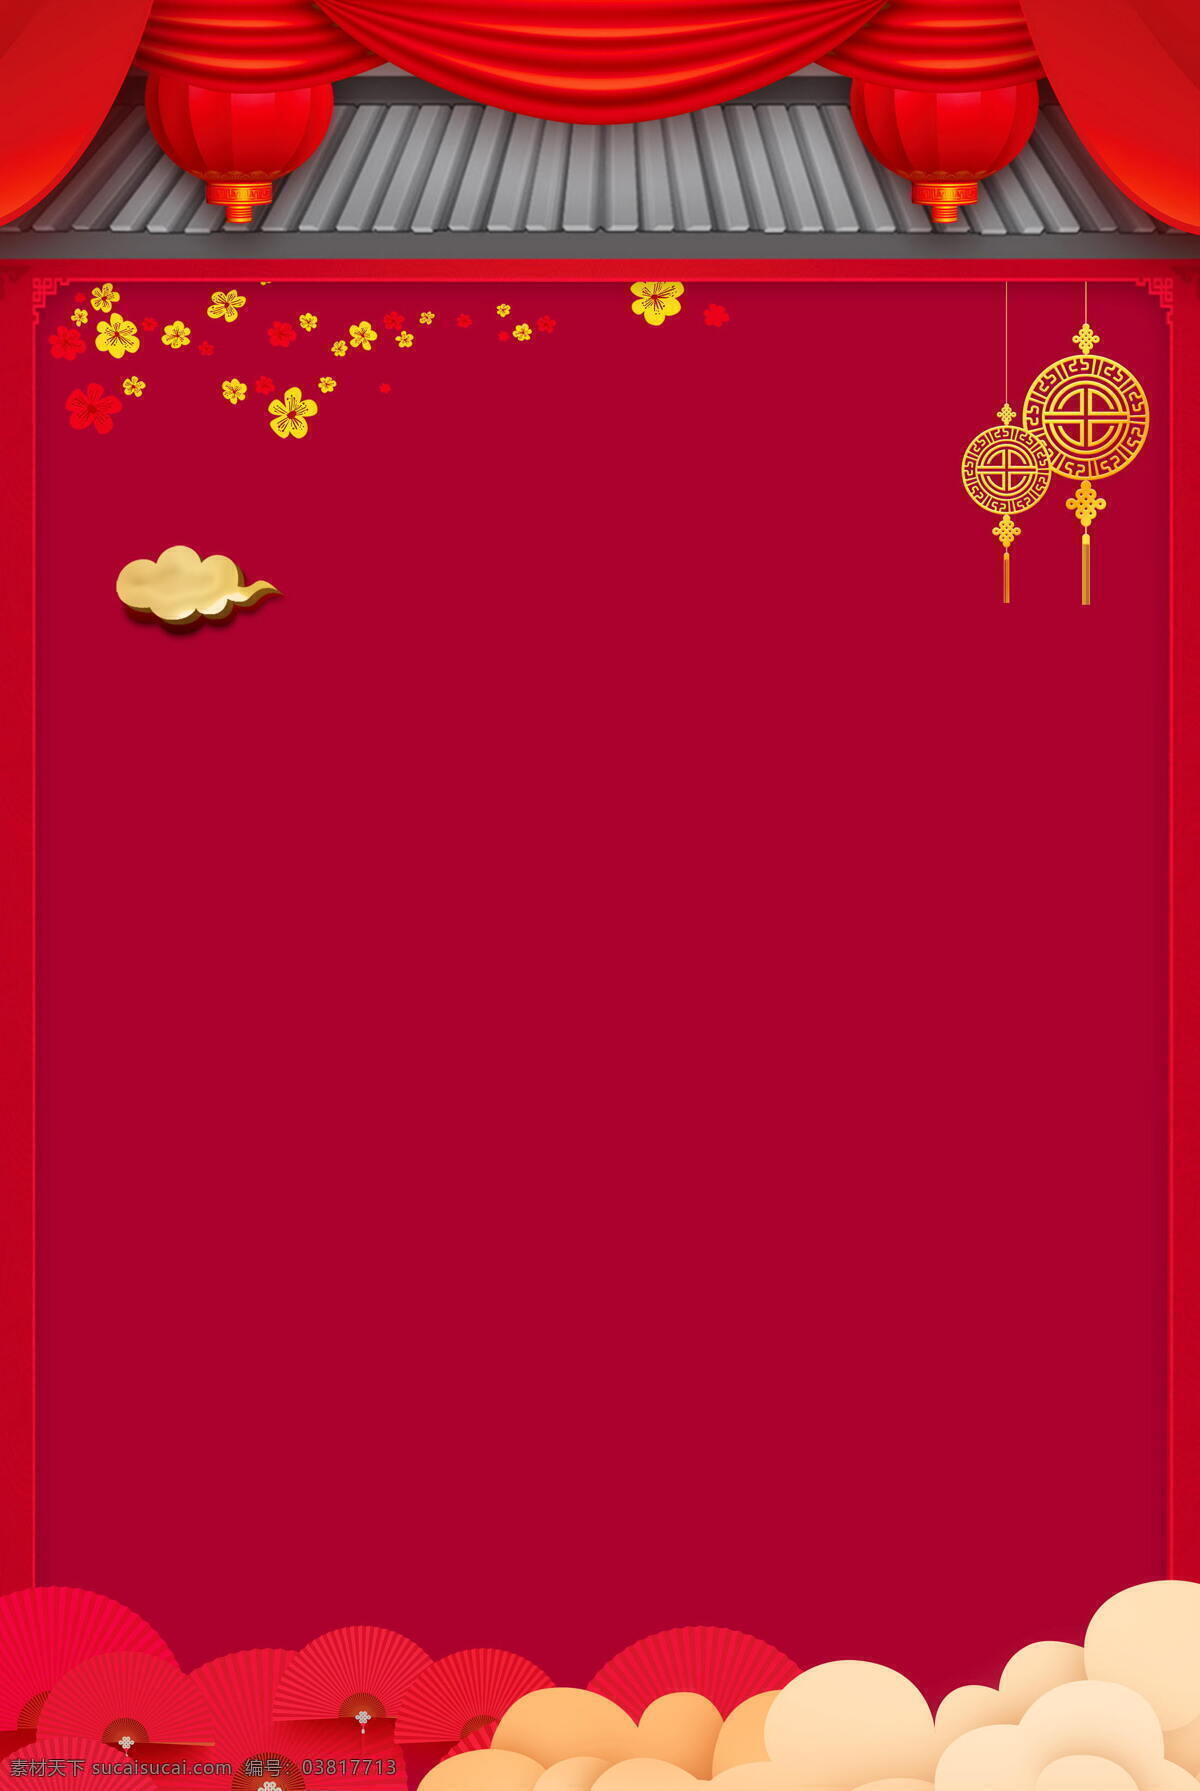 欢庆 中国 佳节 广告 背景 白云 灯笼 广告背景 过节 红色 鲜花 新年 张灯结彩